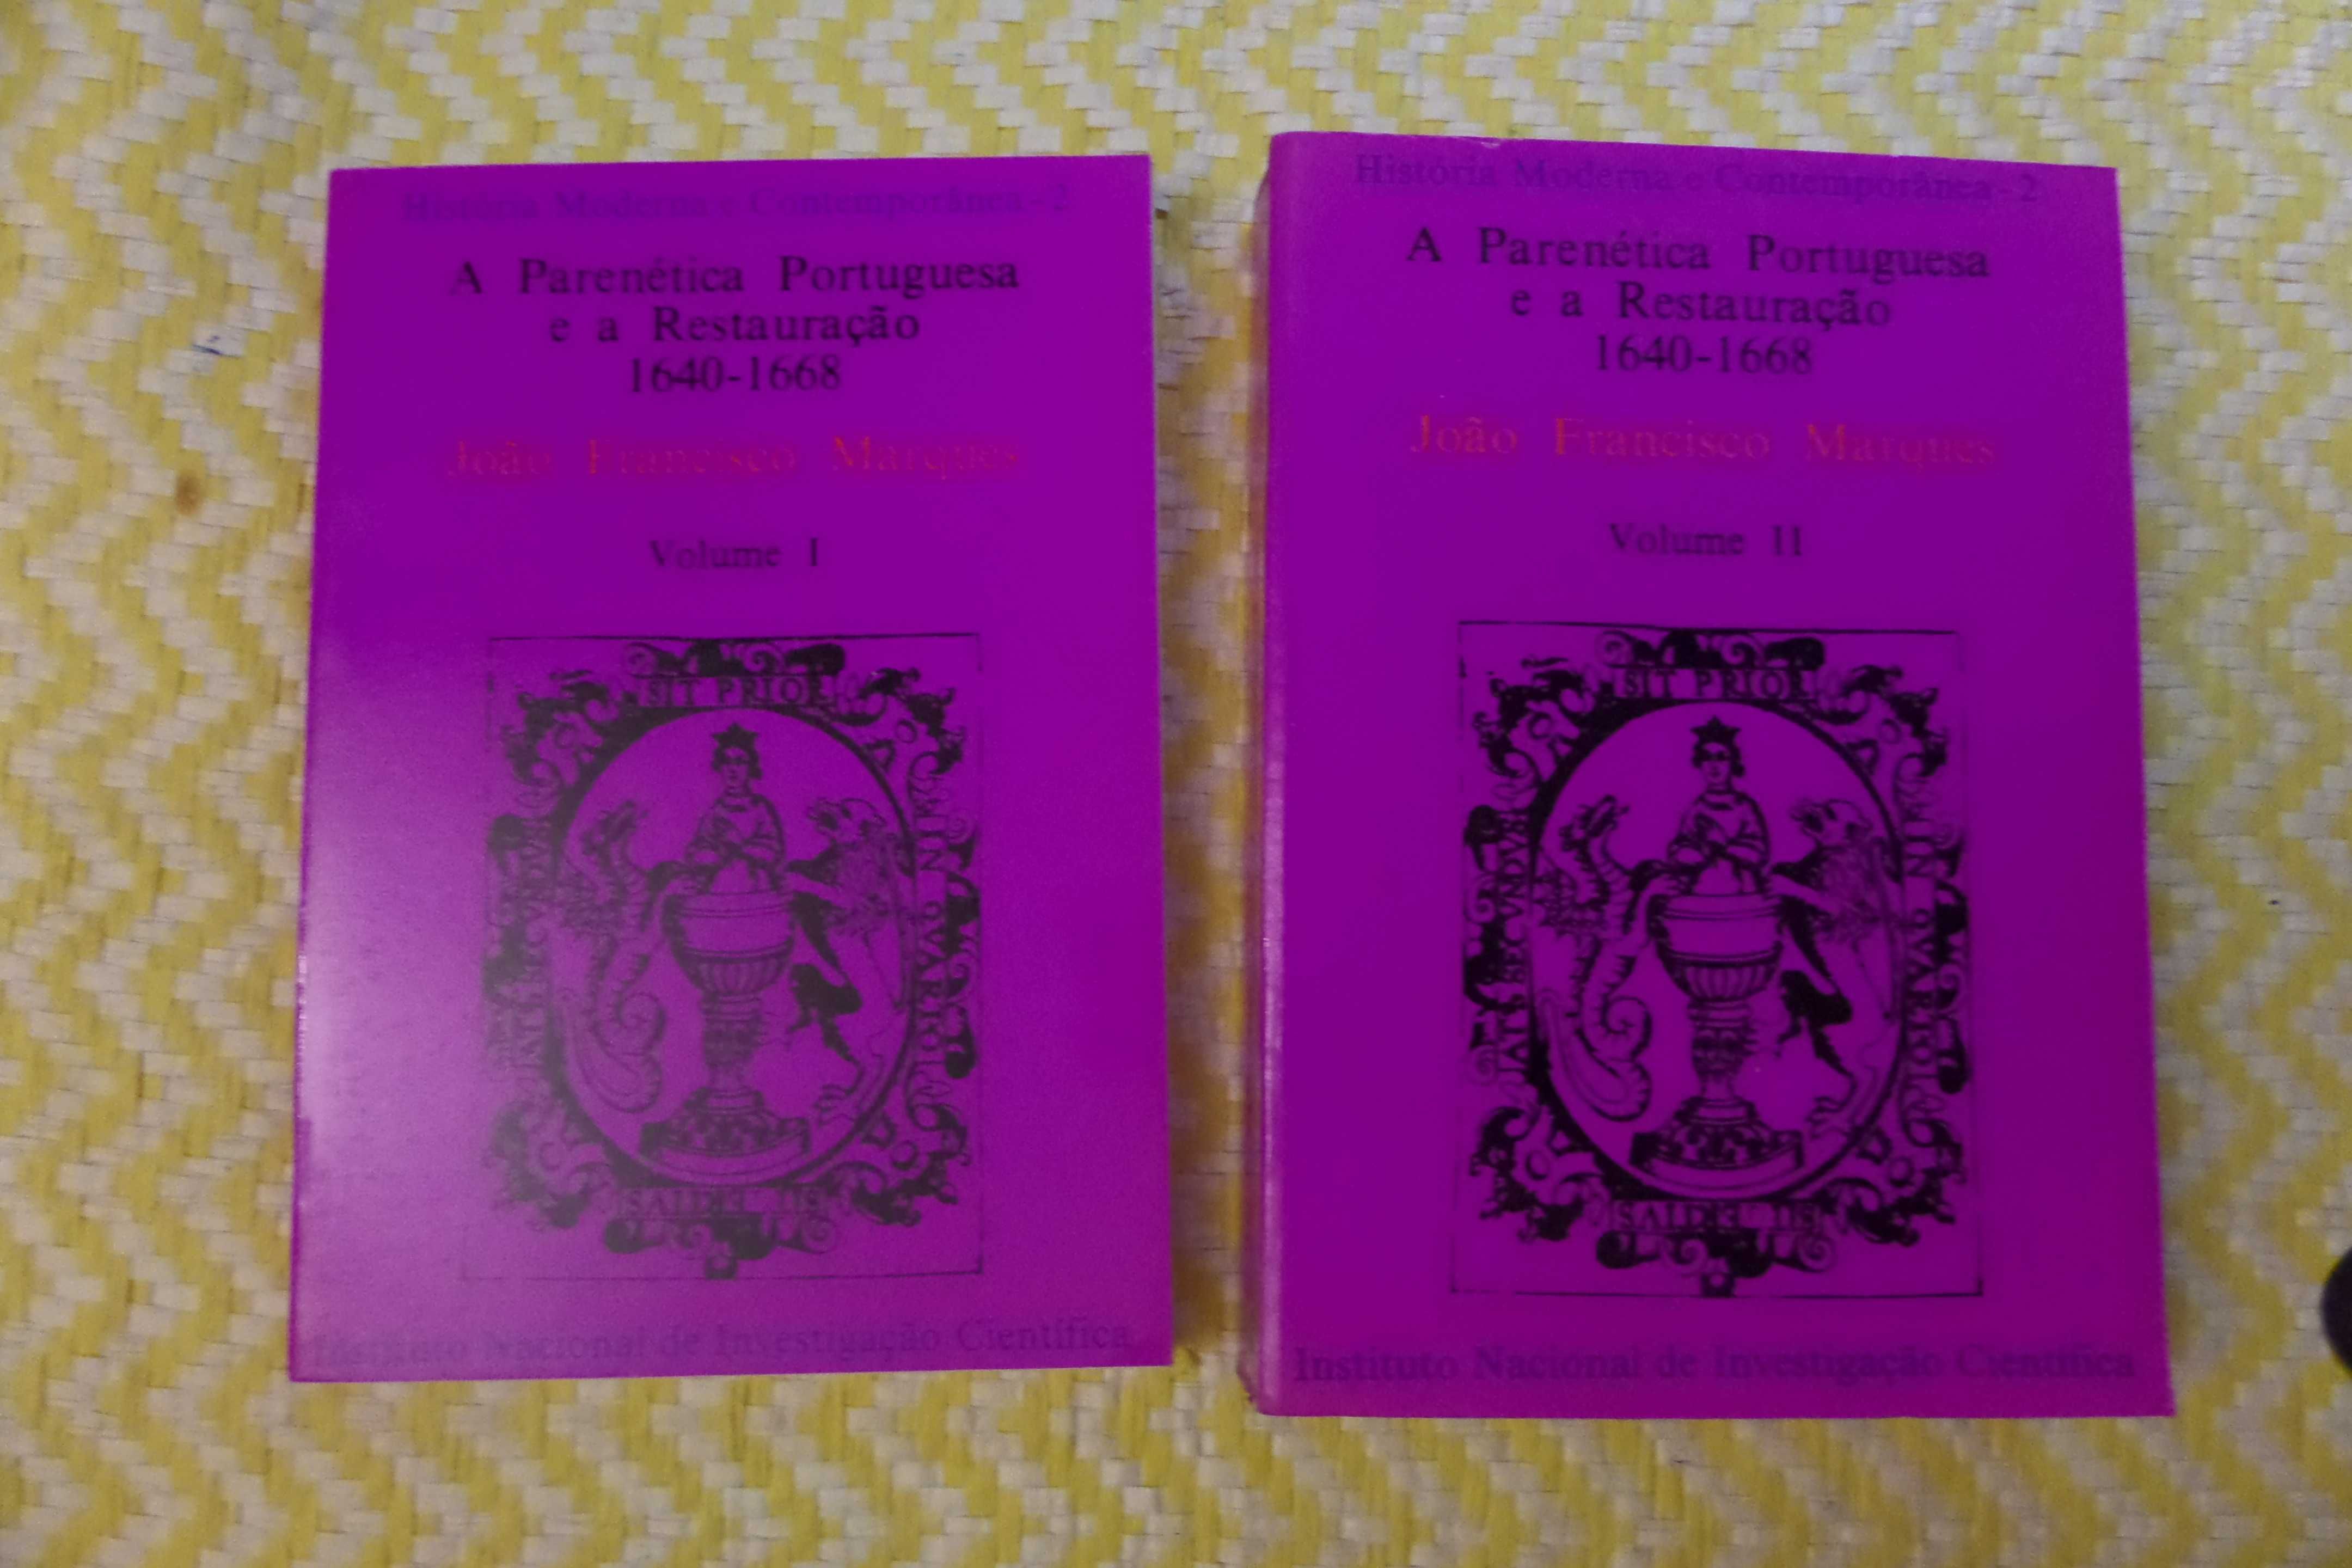 A Parenética Portuguesa e a Restauração Vol I e II 
João F. Marques